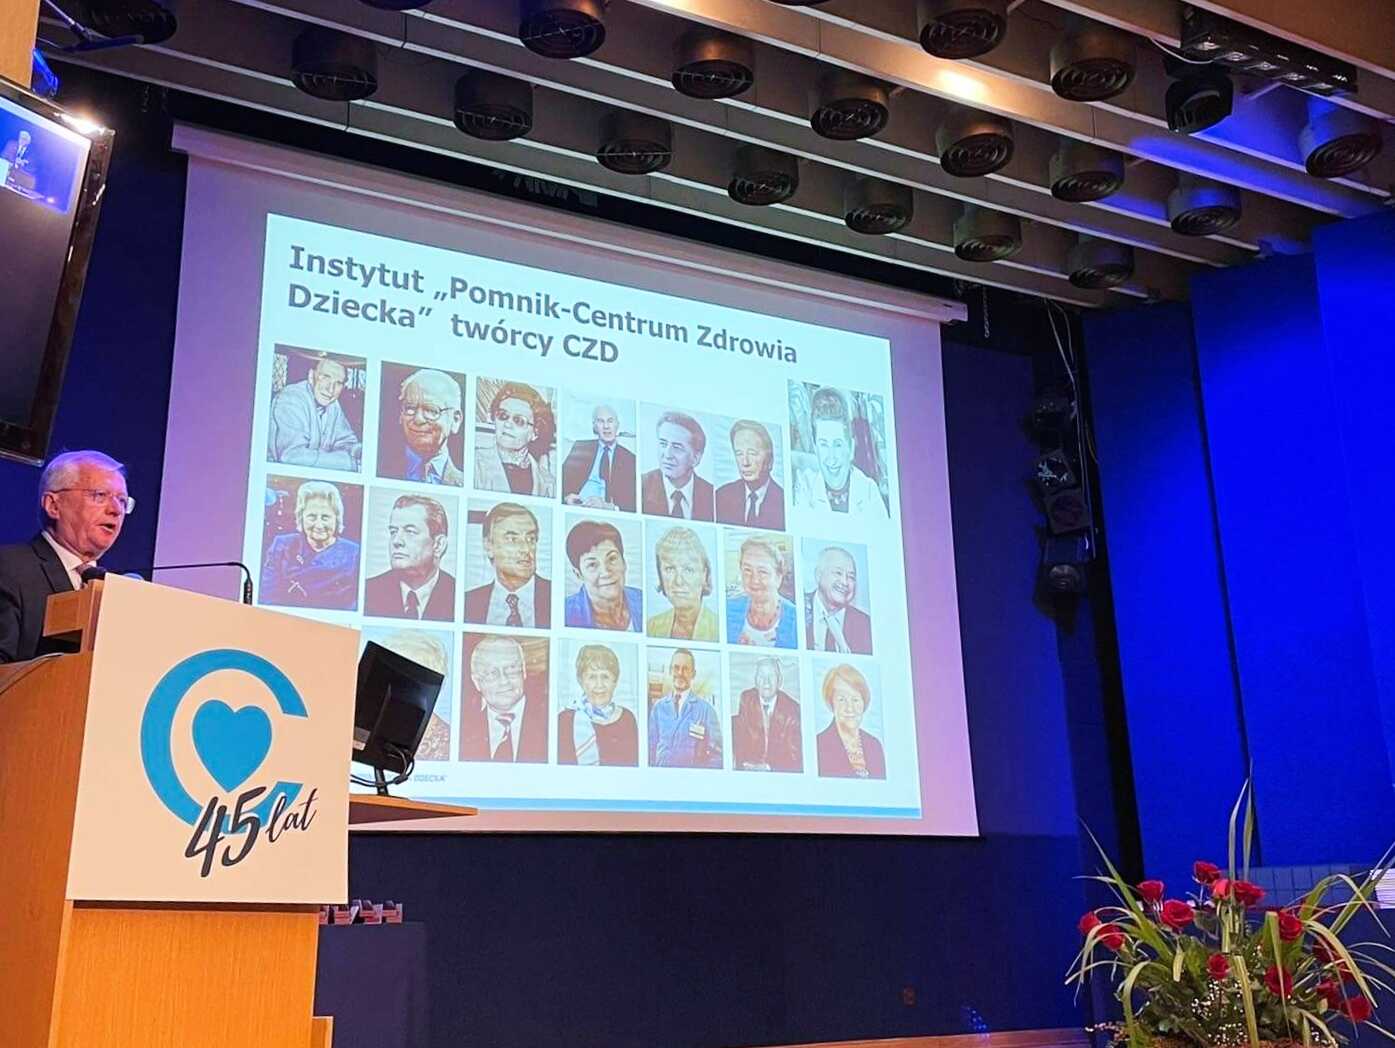 Zdjęcie sceny z dyrektorem CZD dr. n. med. Markiem Migdałem przy mównicy. W oknie sceny ekran ze zdjęciami osób związanych z CZD